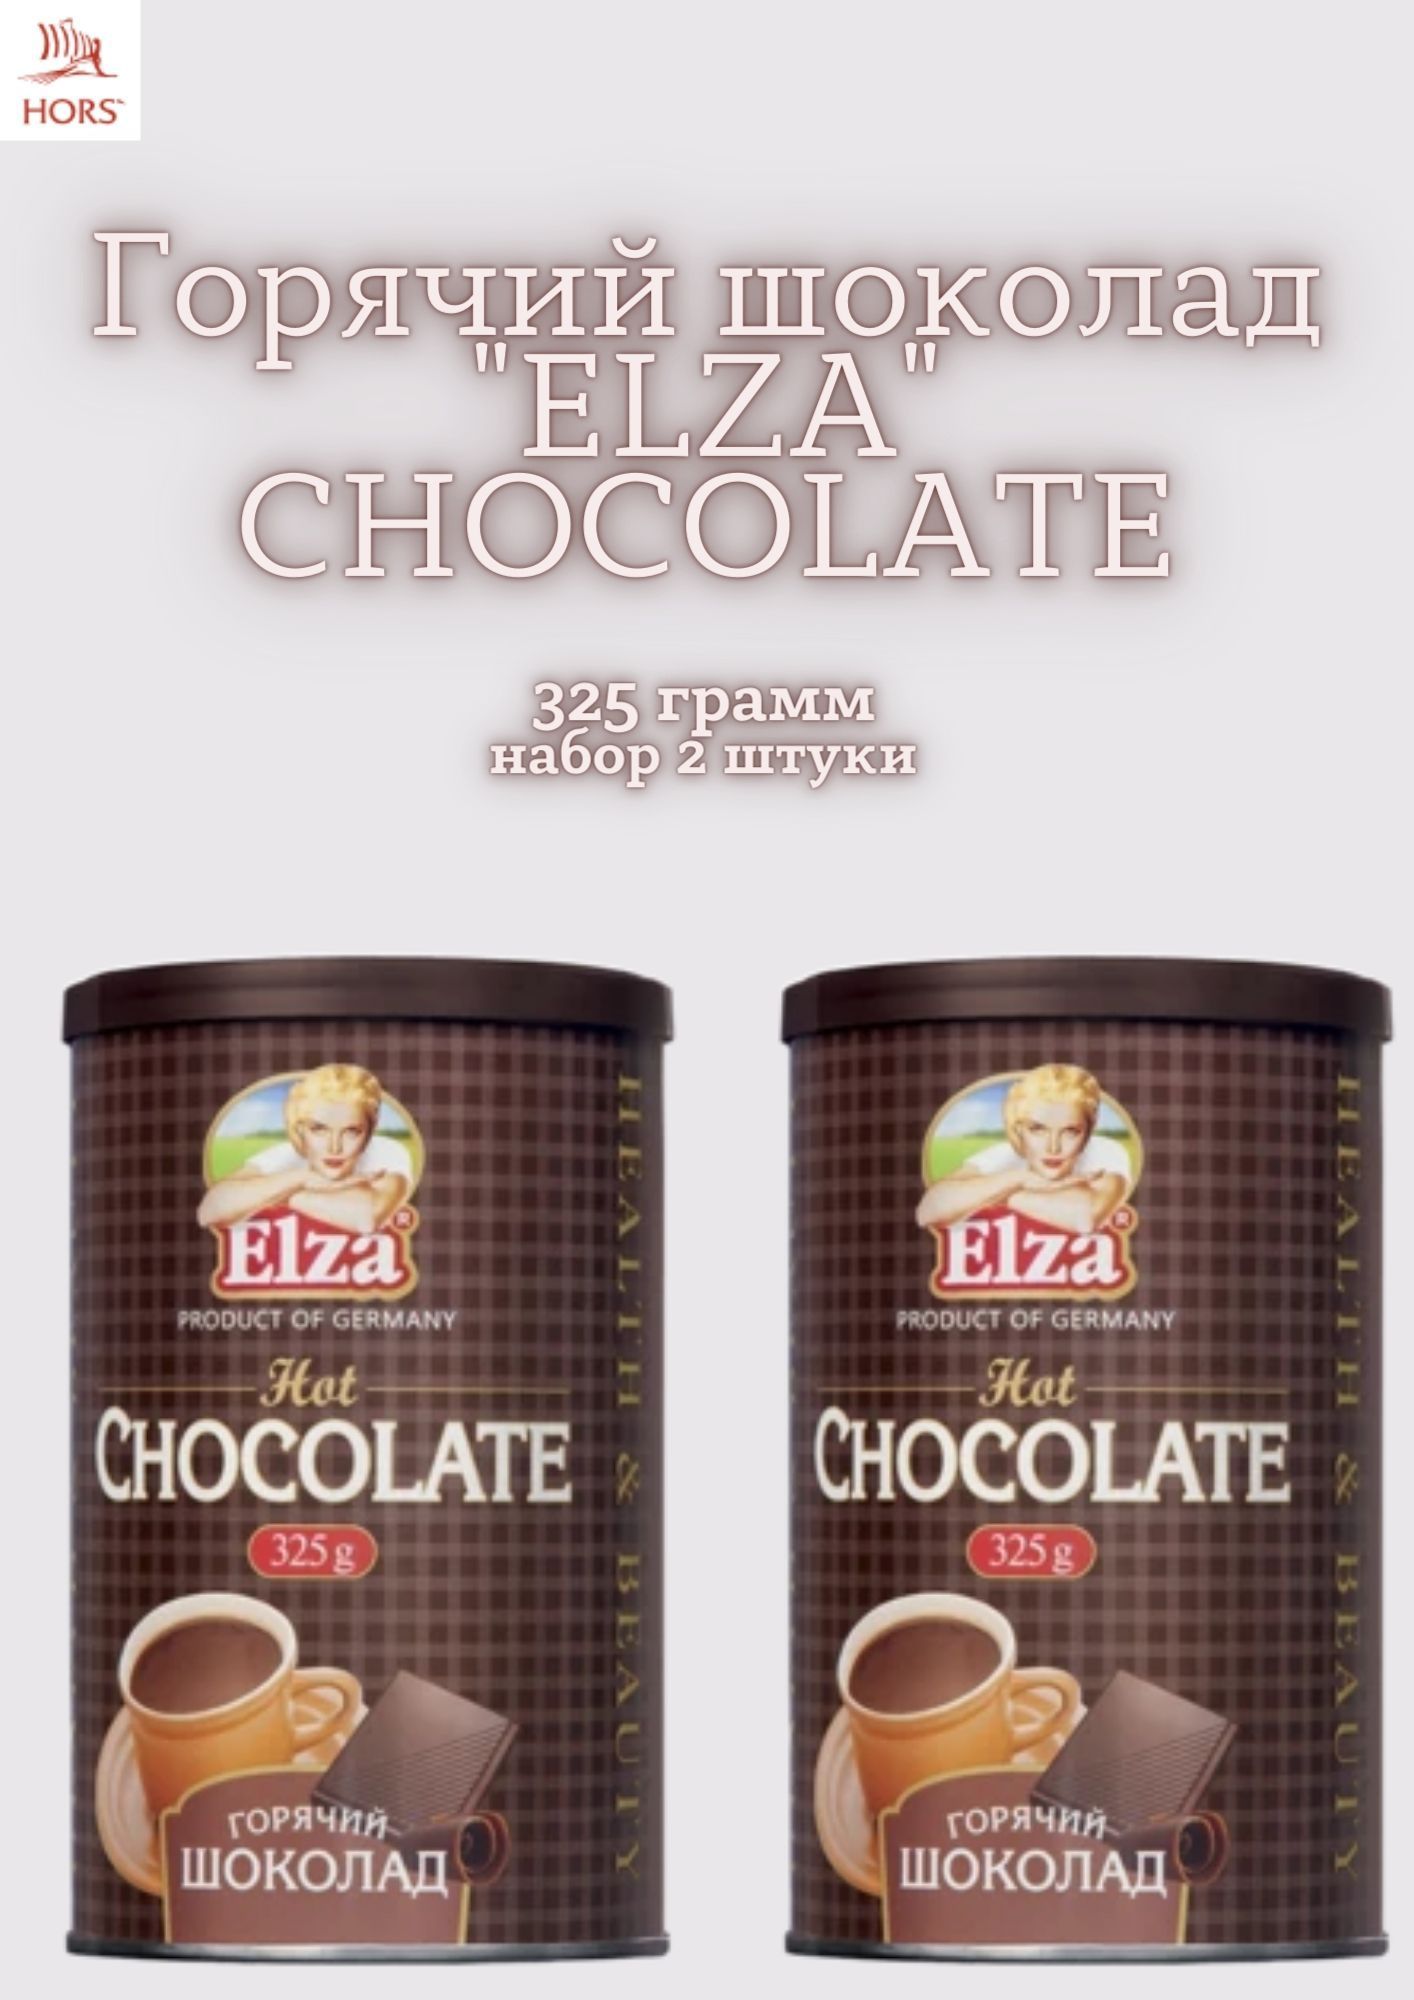 Горячий шоколад elza. Горячий шоколад Elza горячий шоколад растворимый, 325 г, Германия. Горячий шоколад Elza, 325 гр.